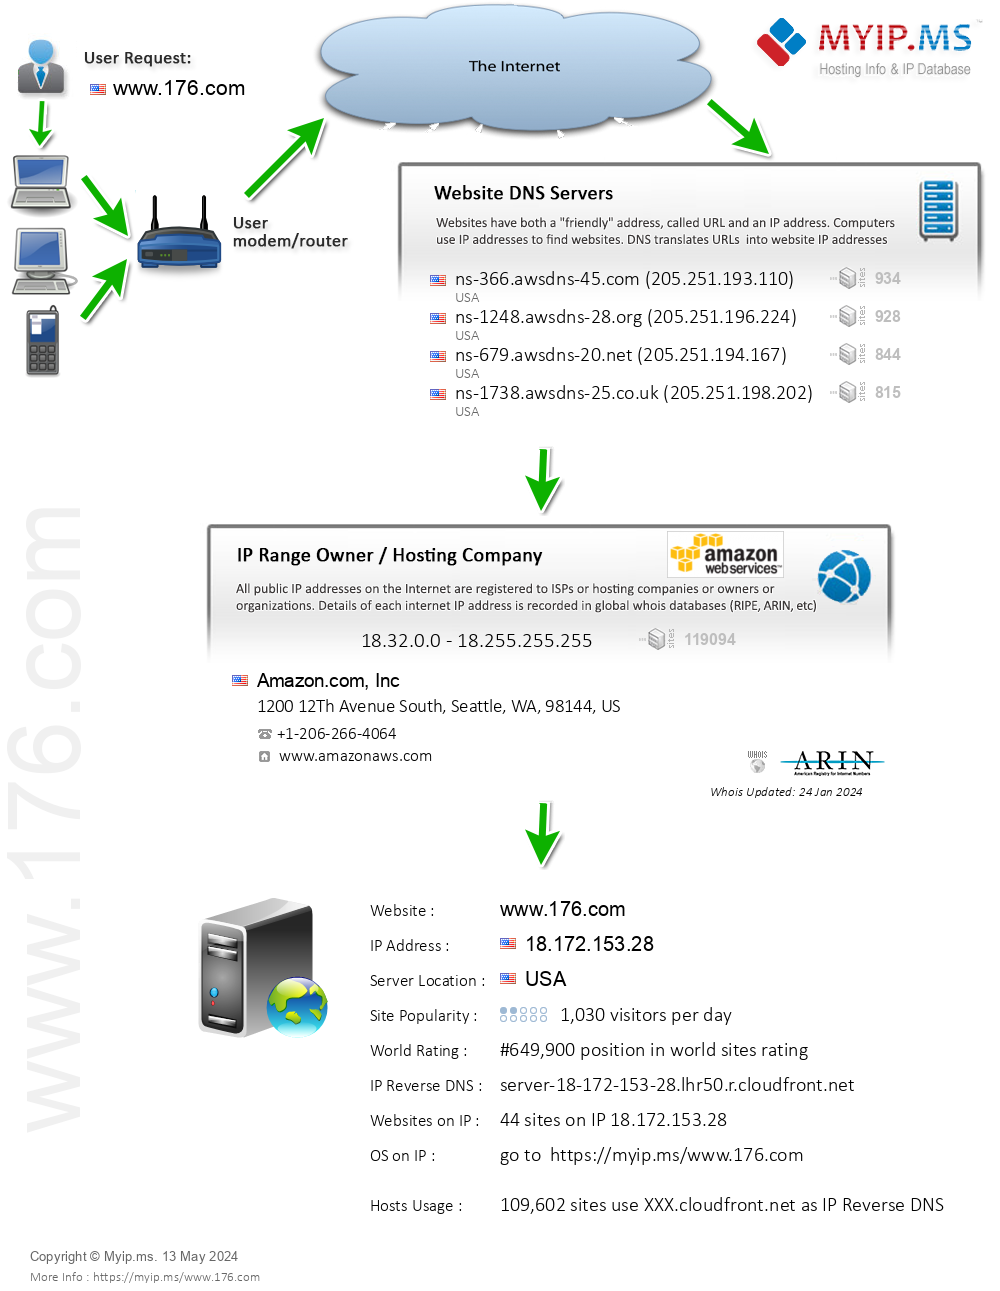 176.com - Website Hosting Visual IP Diagram